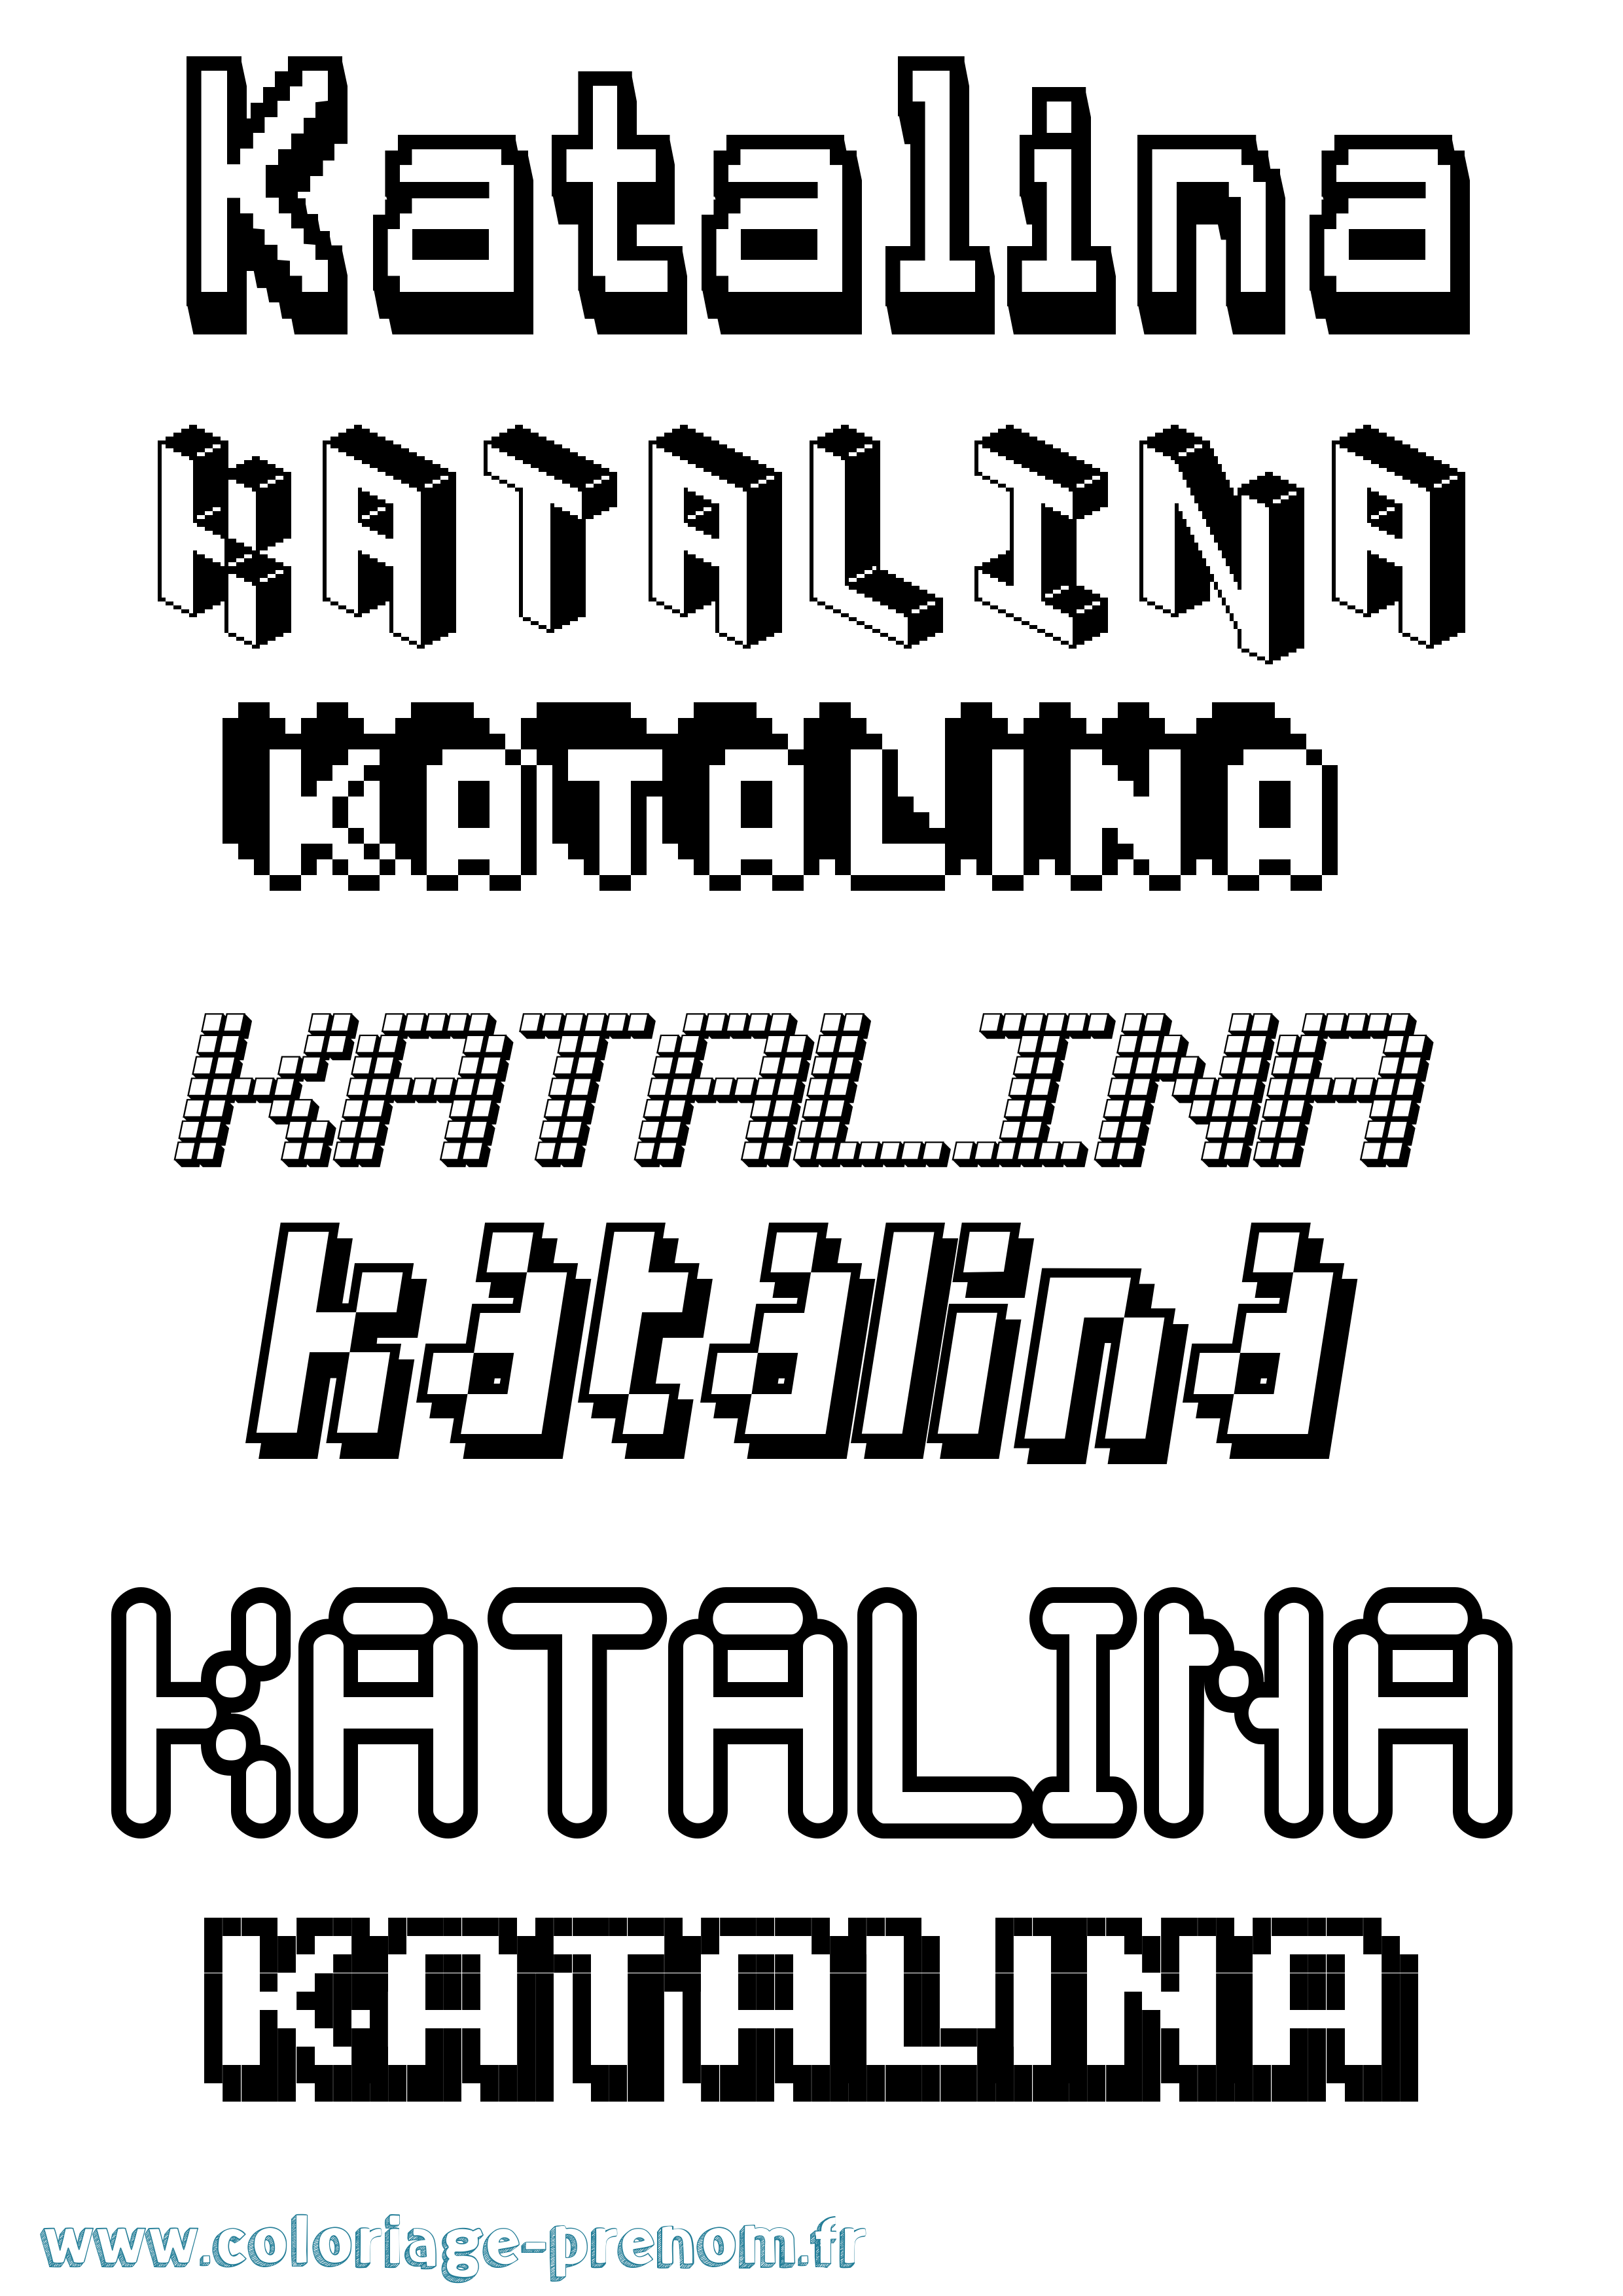 Coloriage prénom Katalina Pixel